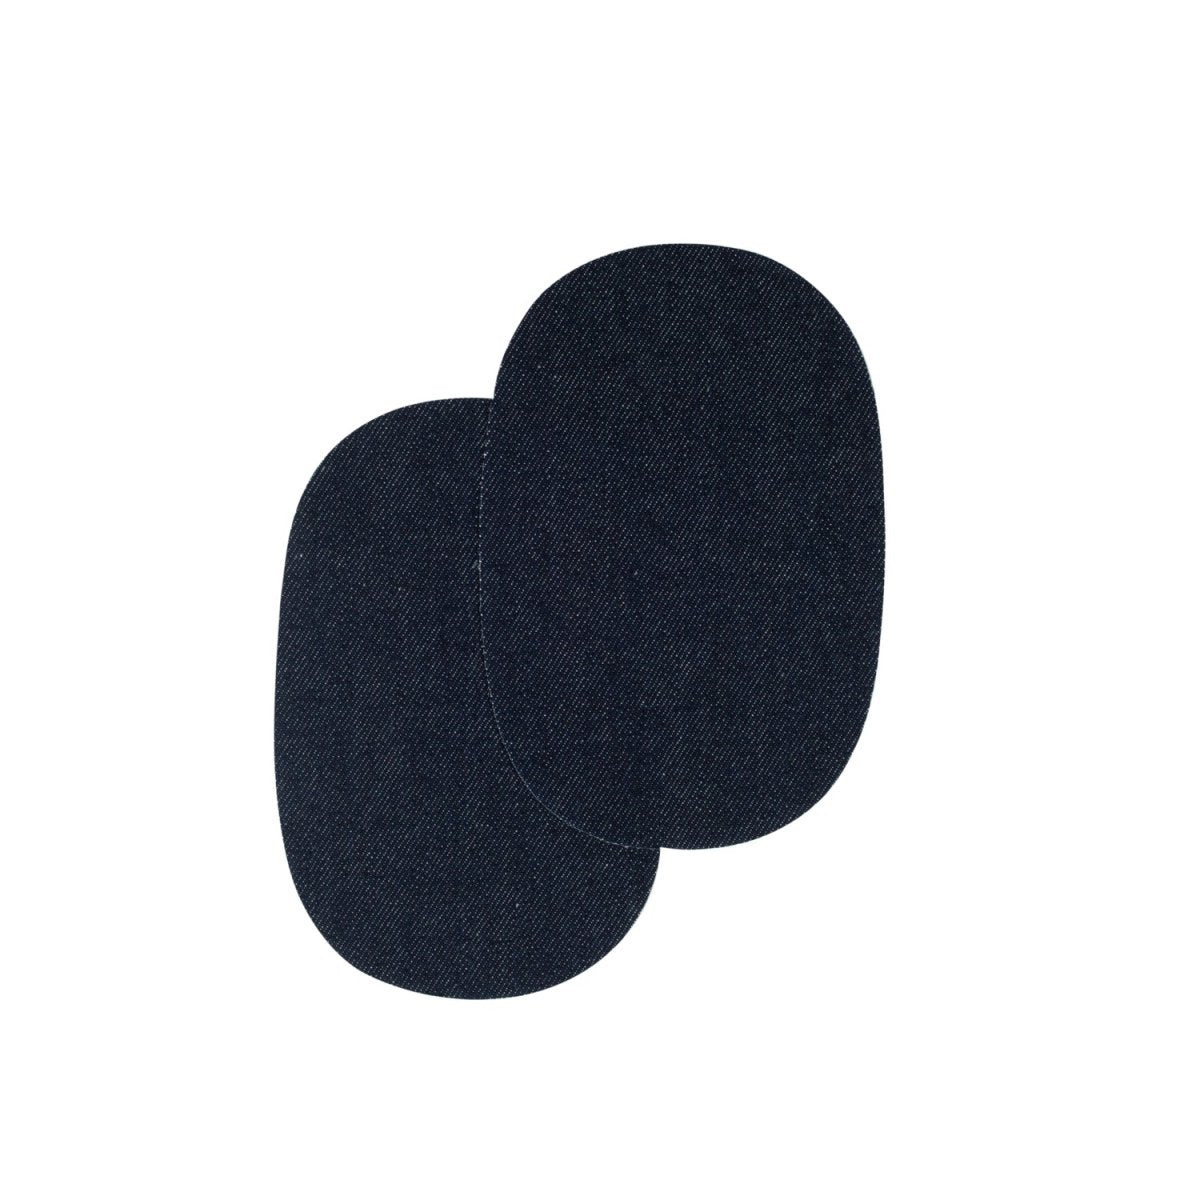 Renfort Thermocollant/A Coudre Coude/Genoux Jeans Noir 10X14Cm Prym 929302